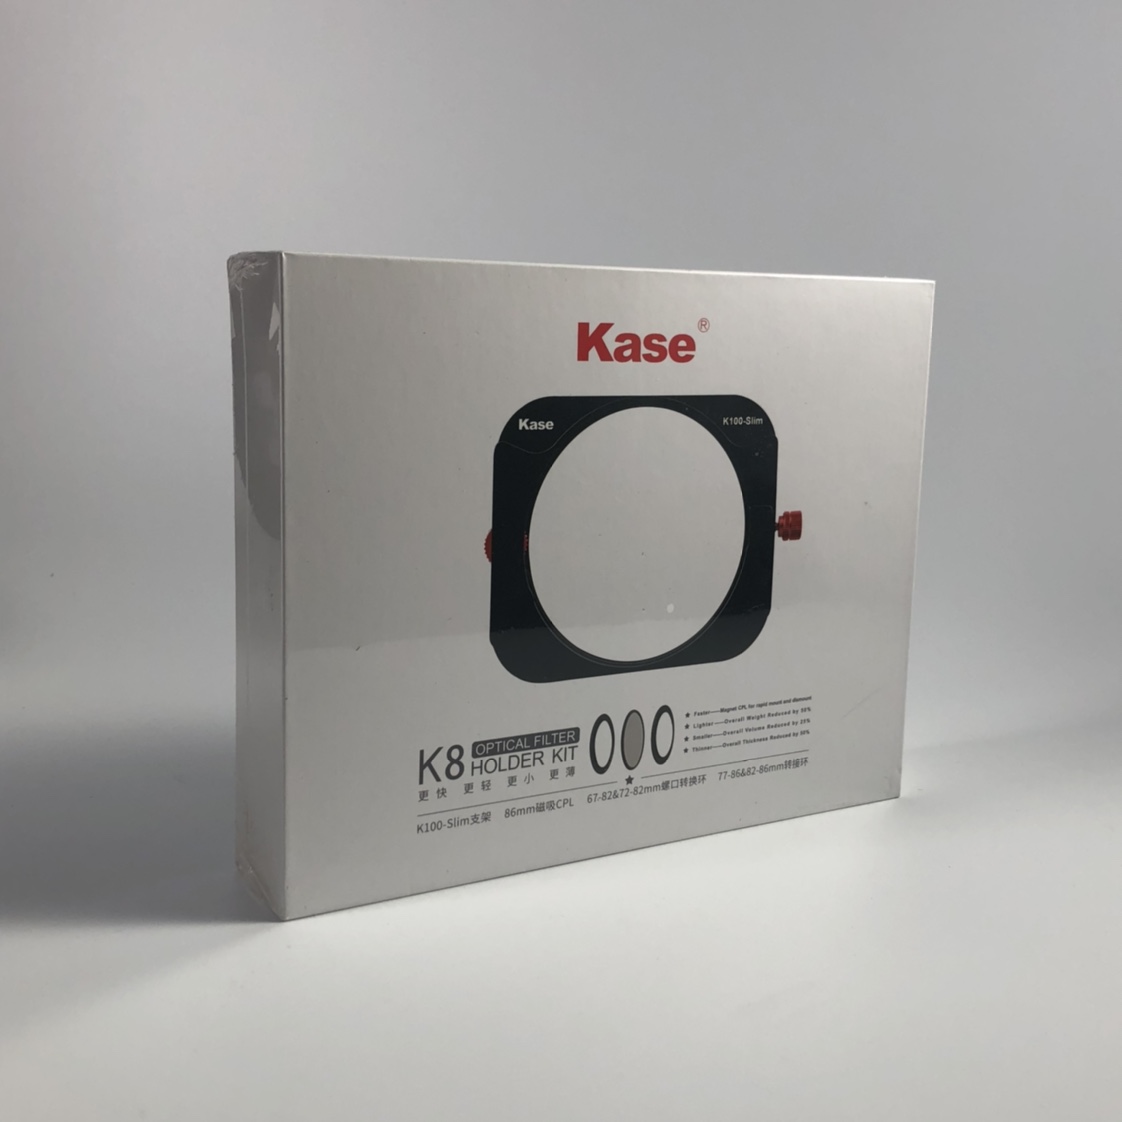 卡色Kase。K8套装适用于2.0mm方片图